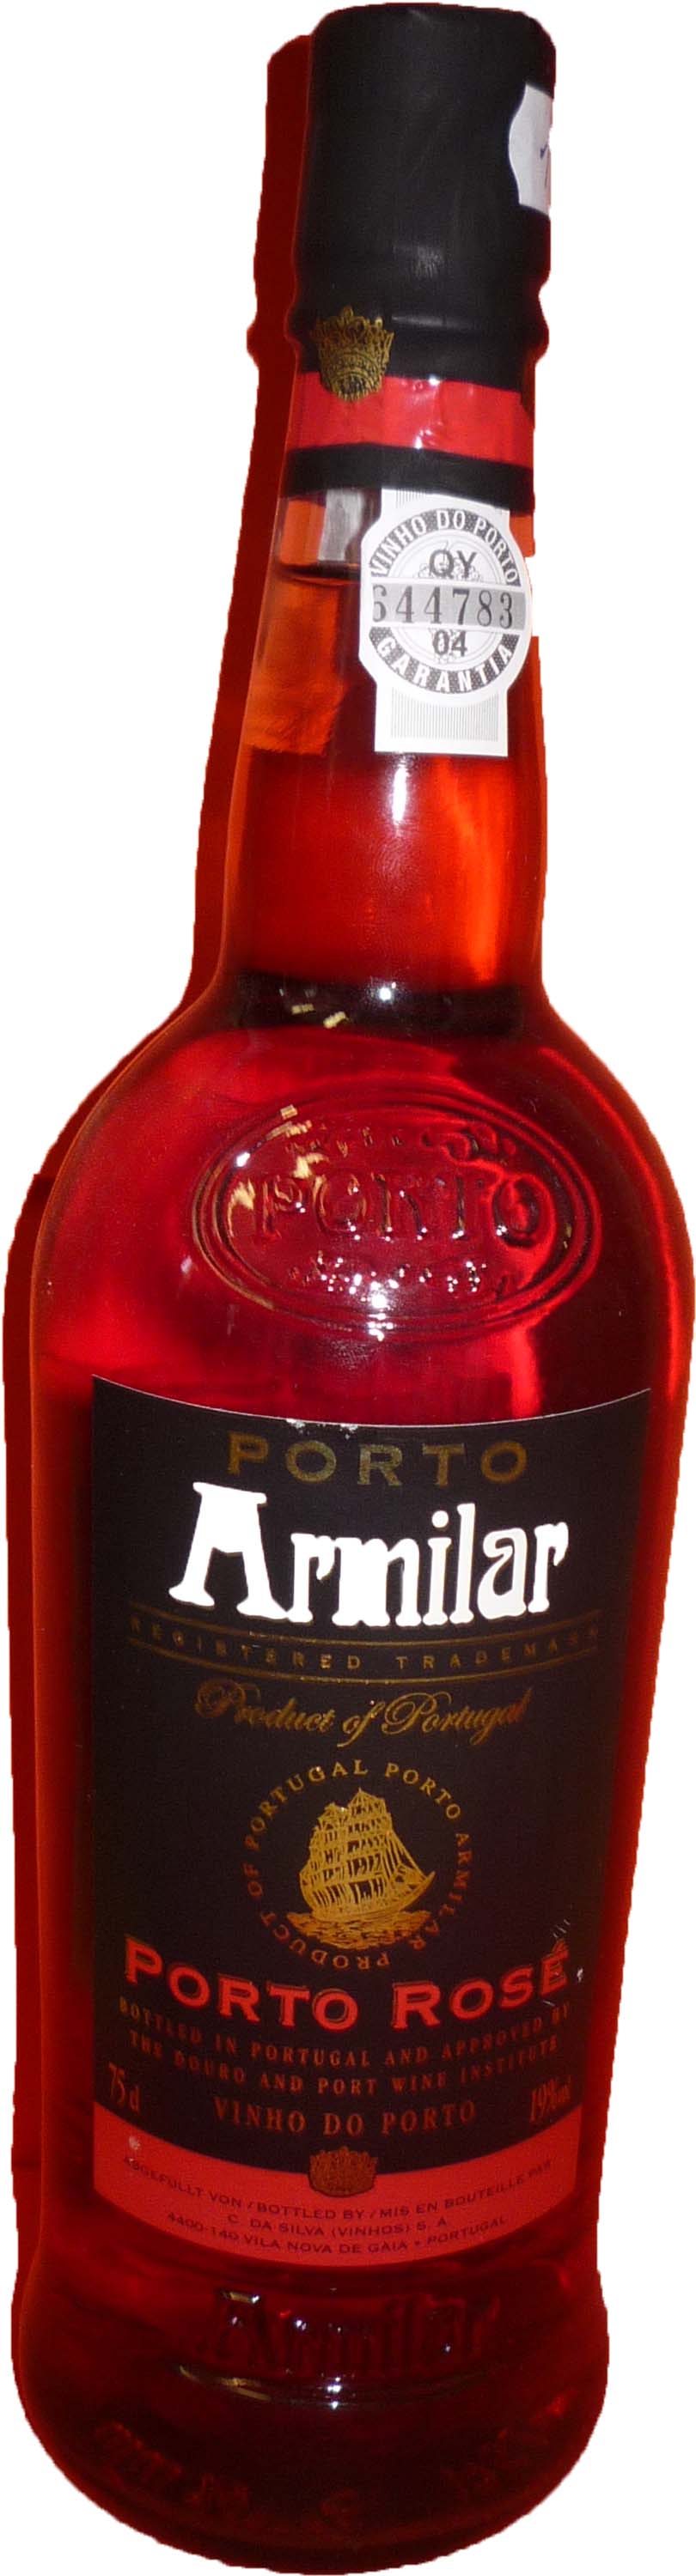 Porto Armilar Porto rosé